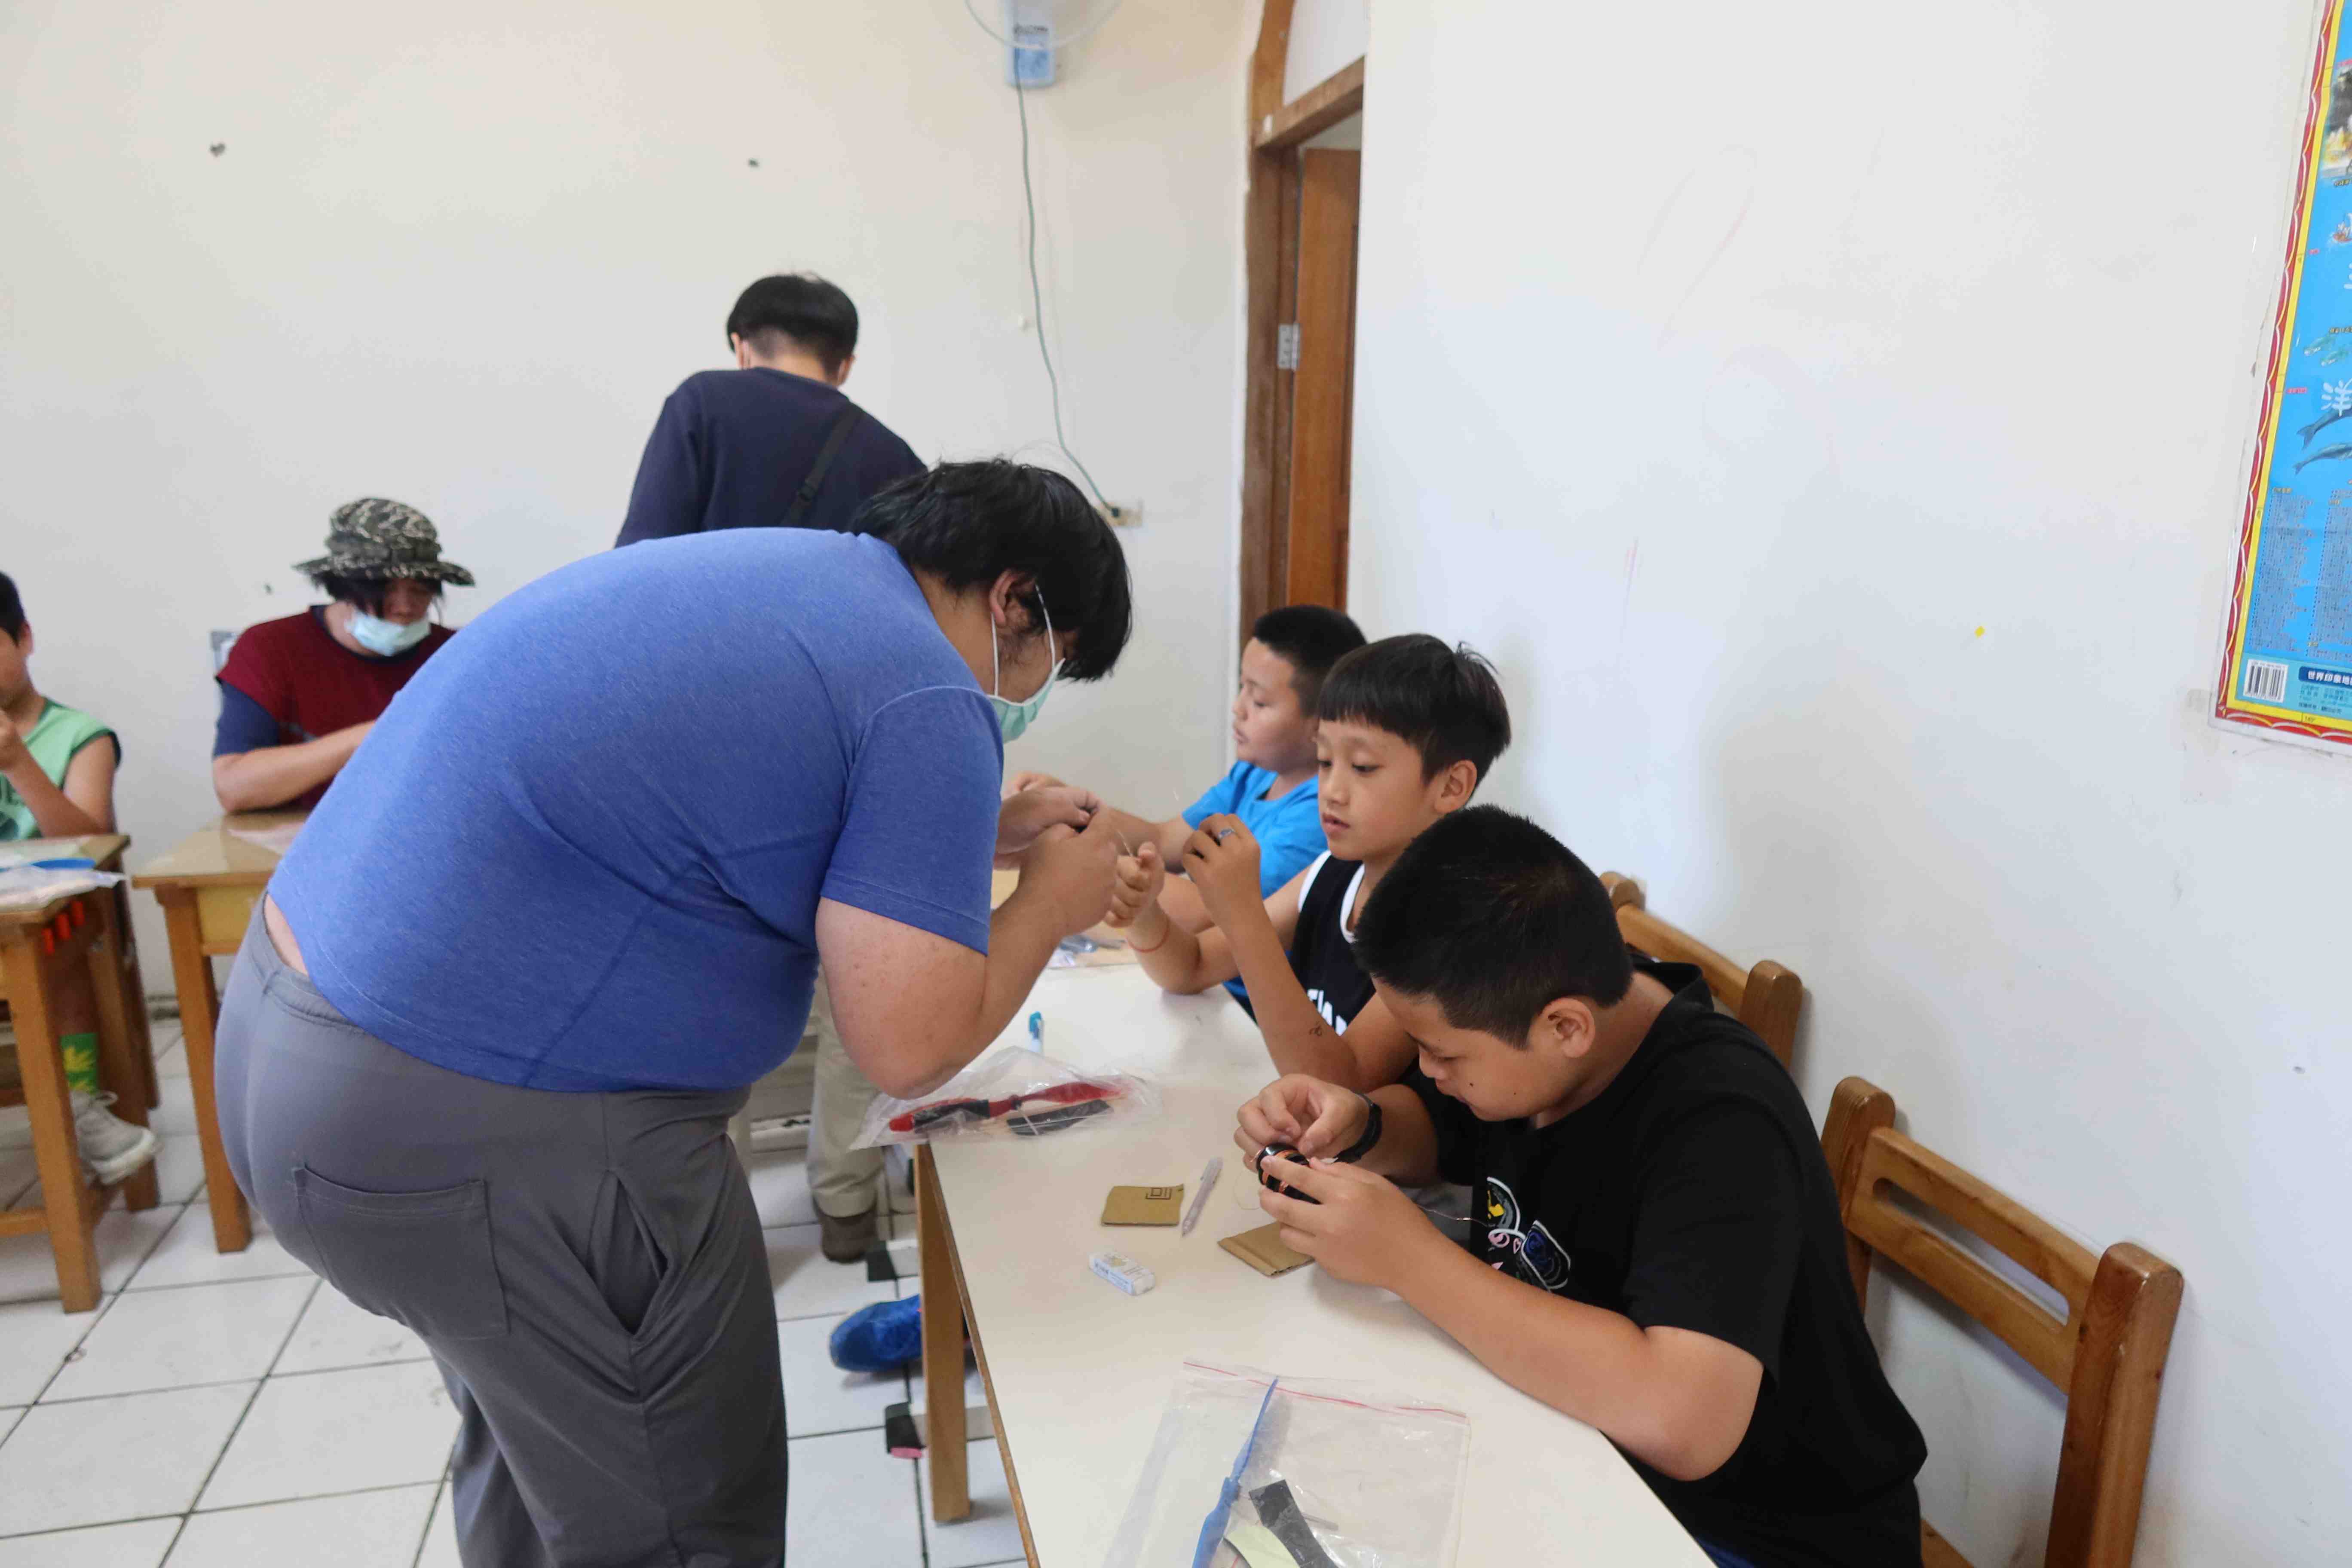 海大師生指導泰雅族學童自製風力發電機海大師生指導泰雅族學童自製風力發電機